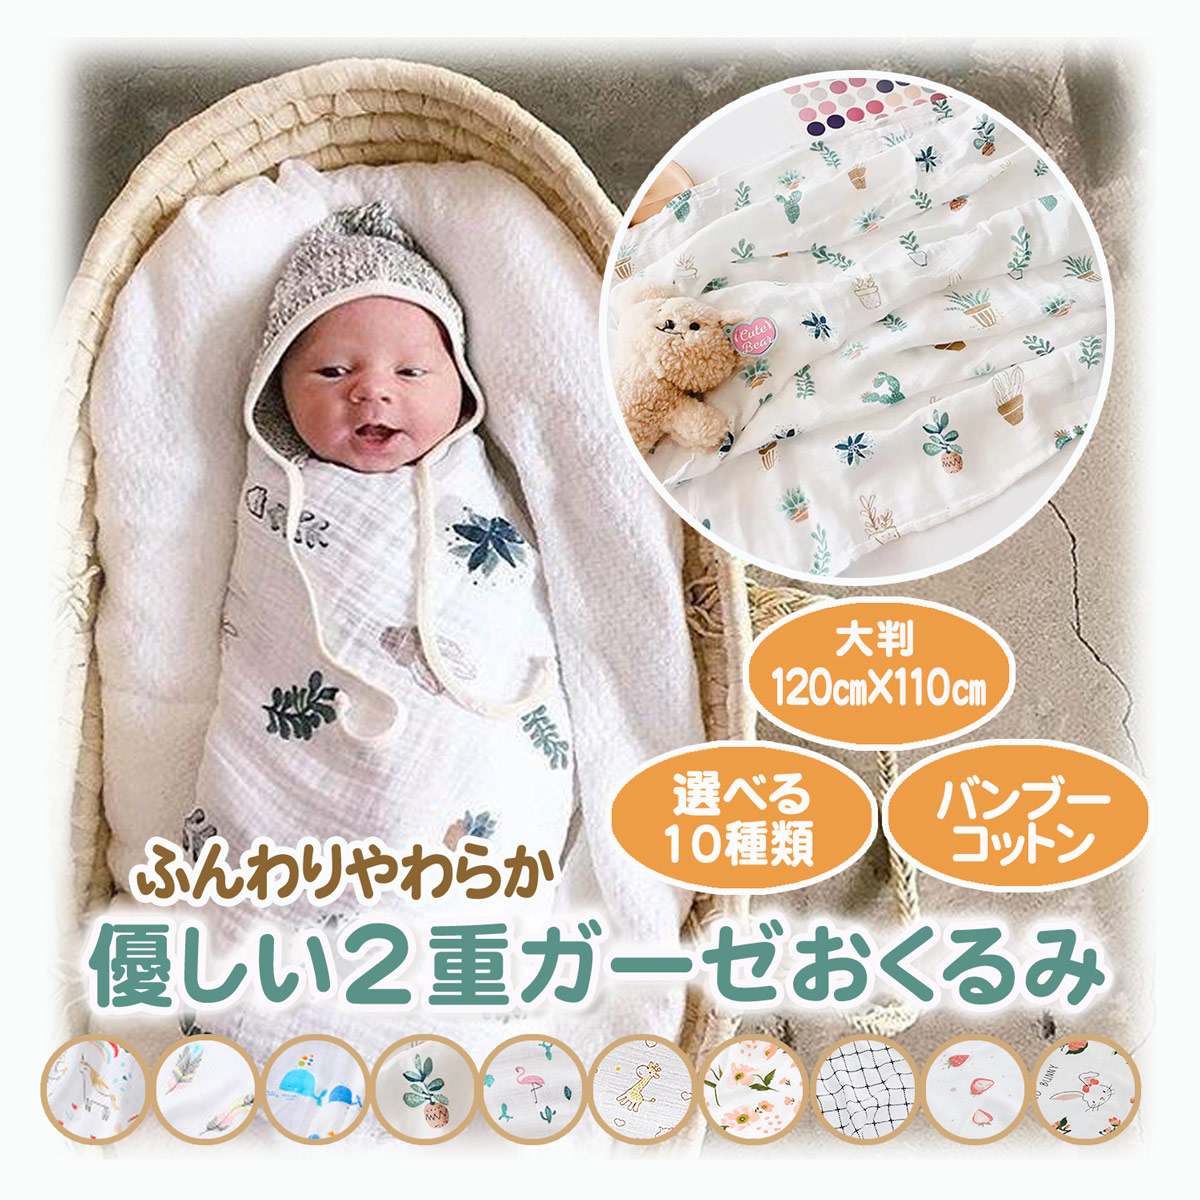  одеяло марля большой размер покрывало из марли baby младенец малыш . днем . Kett детская кроватка новорожденный .. зима осень 